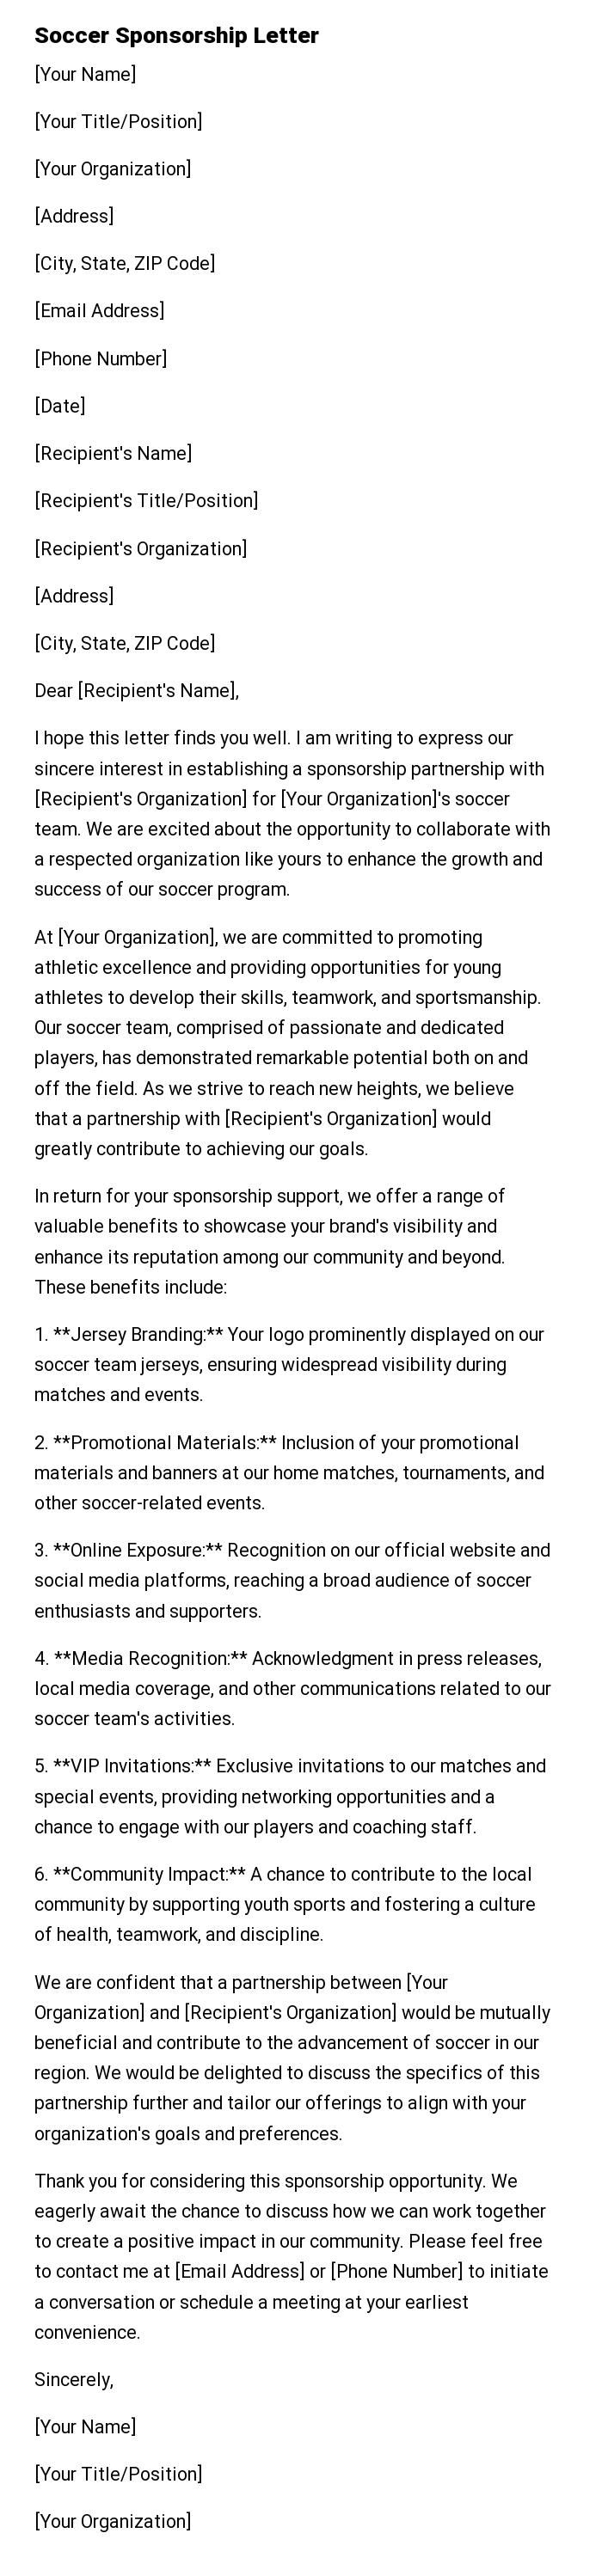 Soccer Sponsorship Letter